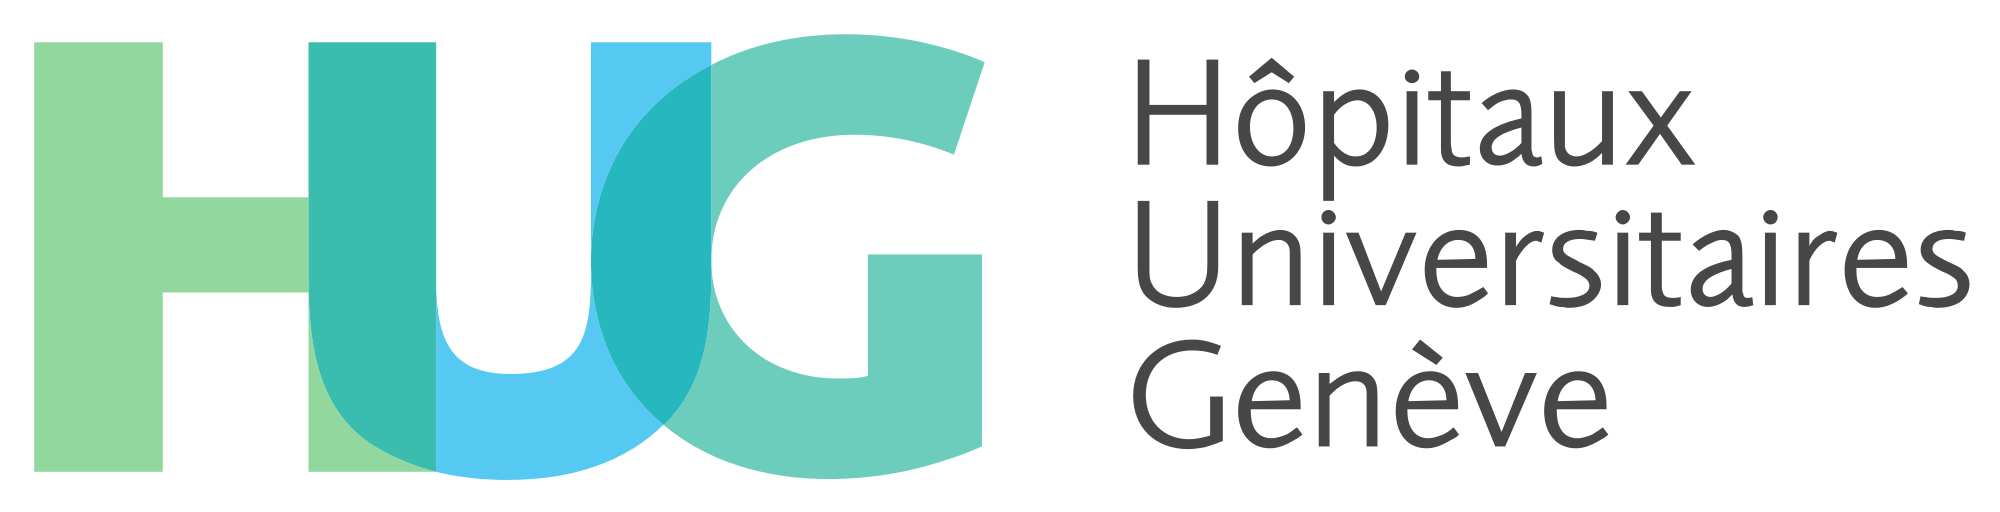 Hiug Logo - File:Hôpitaux universitaires de Genève 2015 logo.svg - Wikimedia Commons